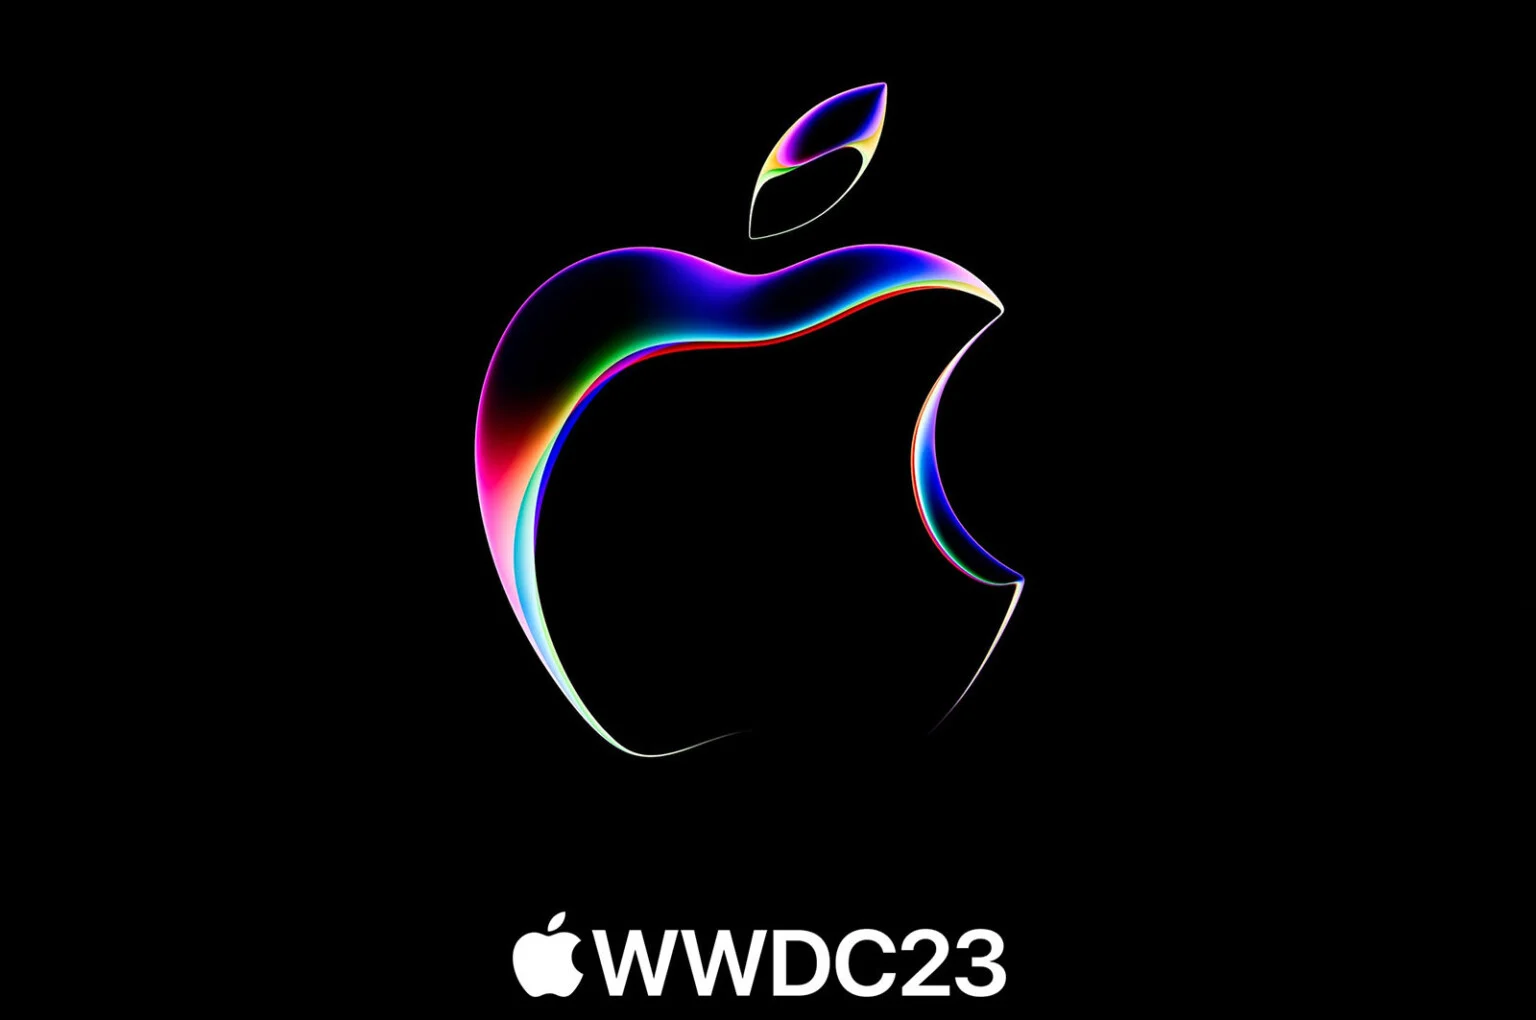 Apple celebrará su gran discurso de apertura el 12 de septiembre a las 12 m horas.